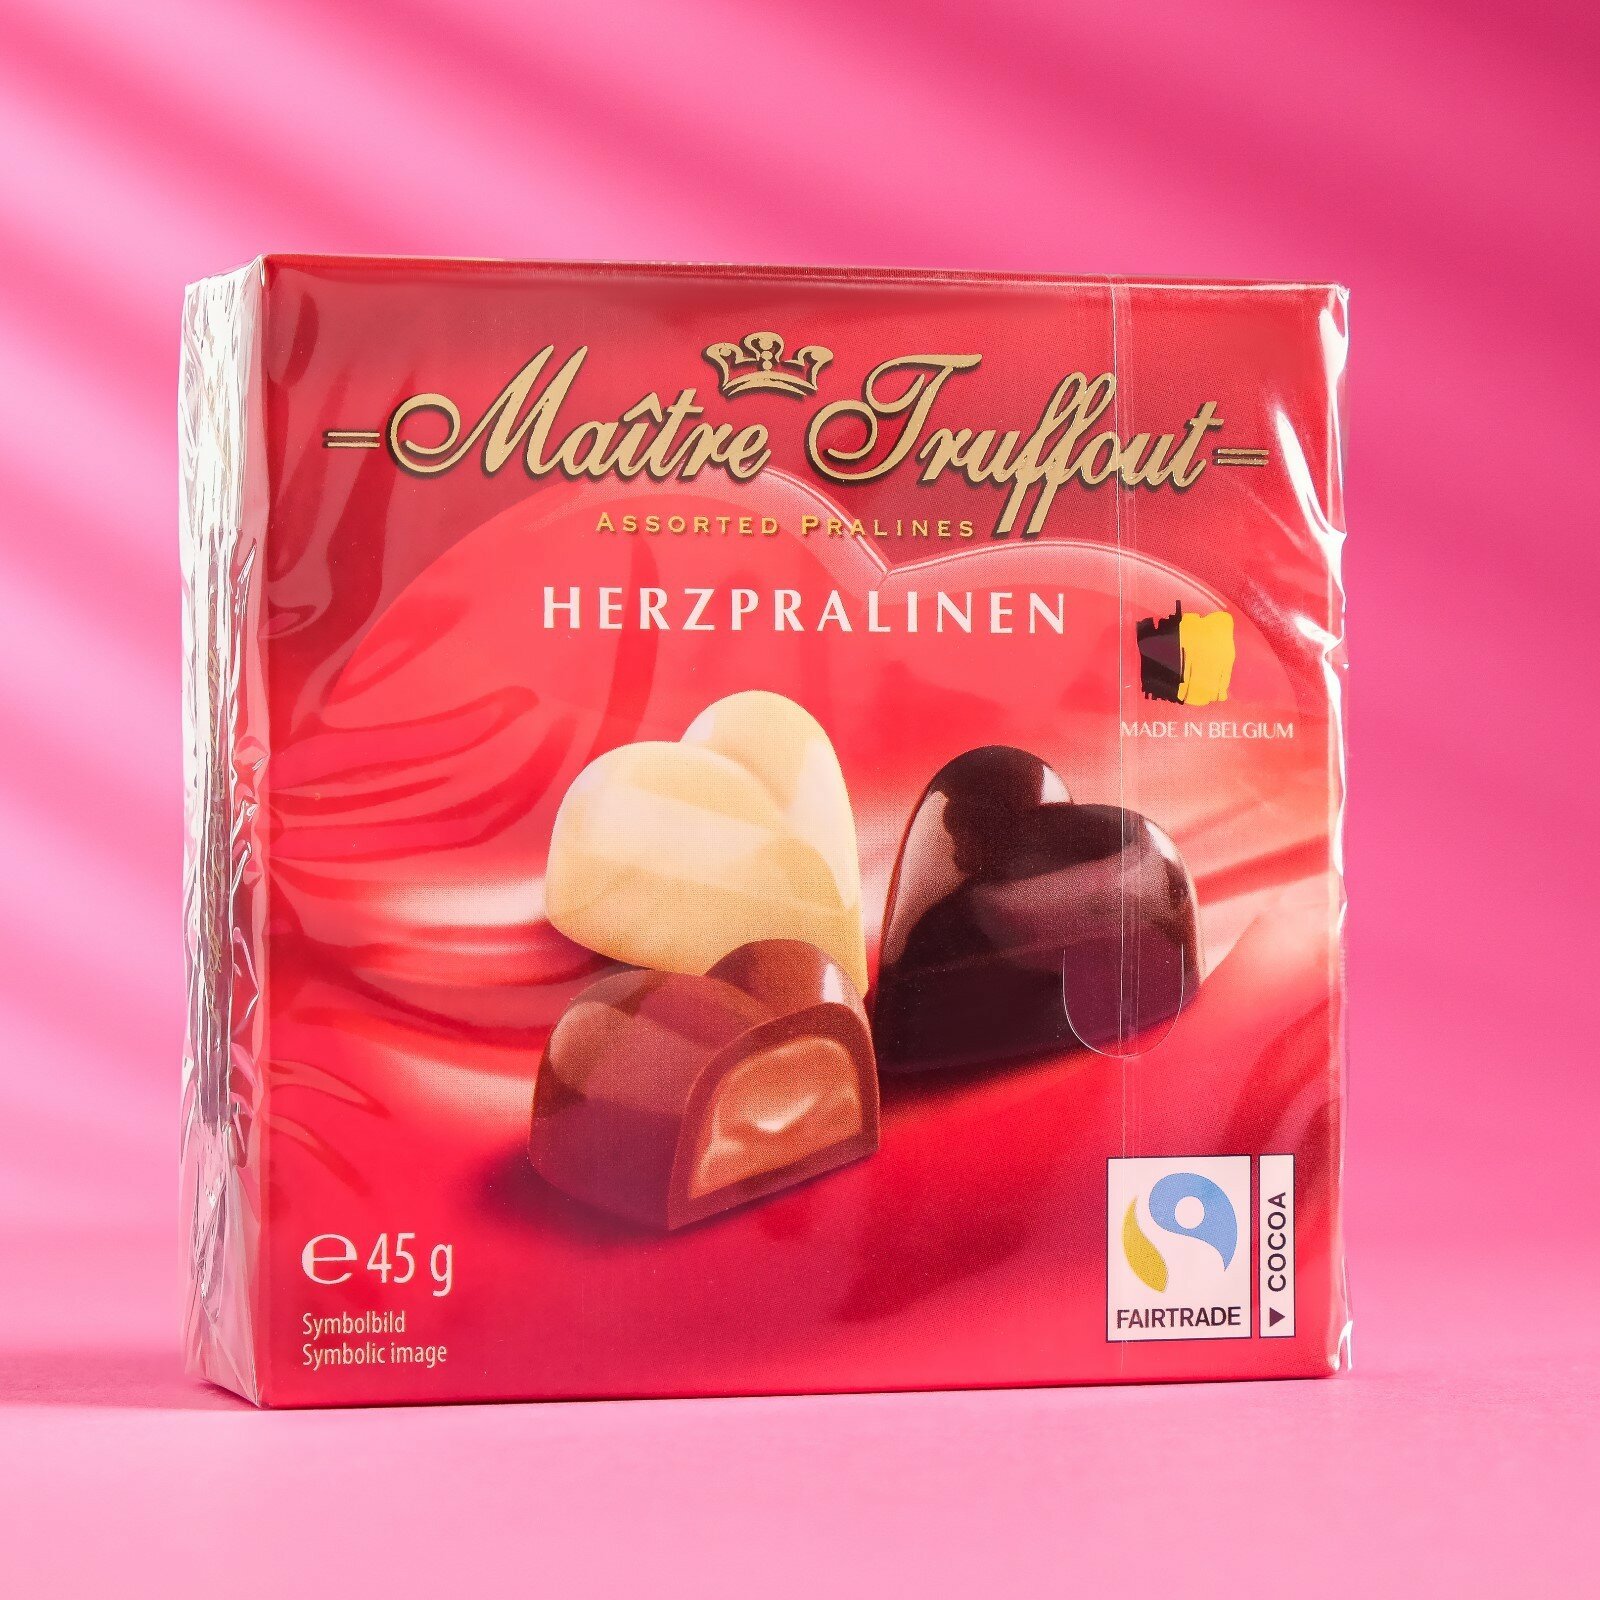 Шоколадные конфеты ассорти «Мини-сердца», 45 г